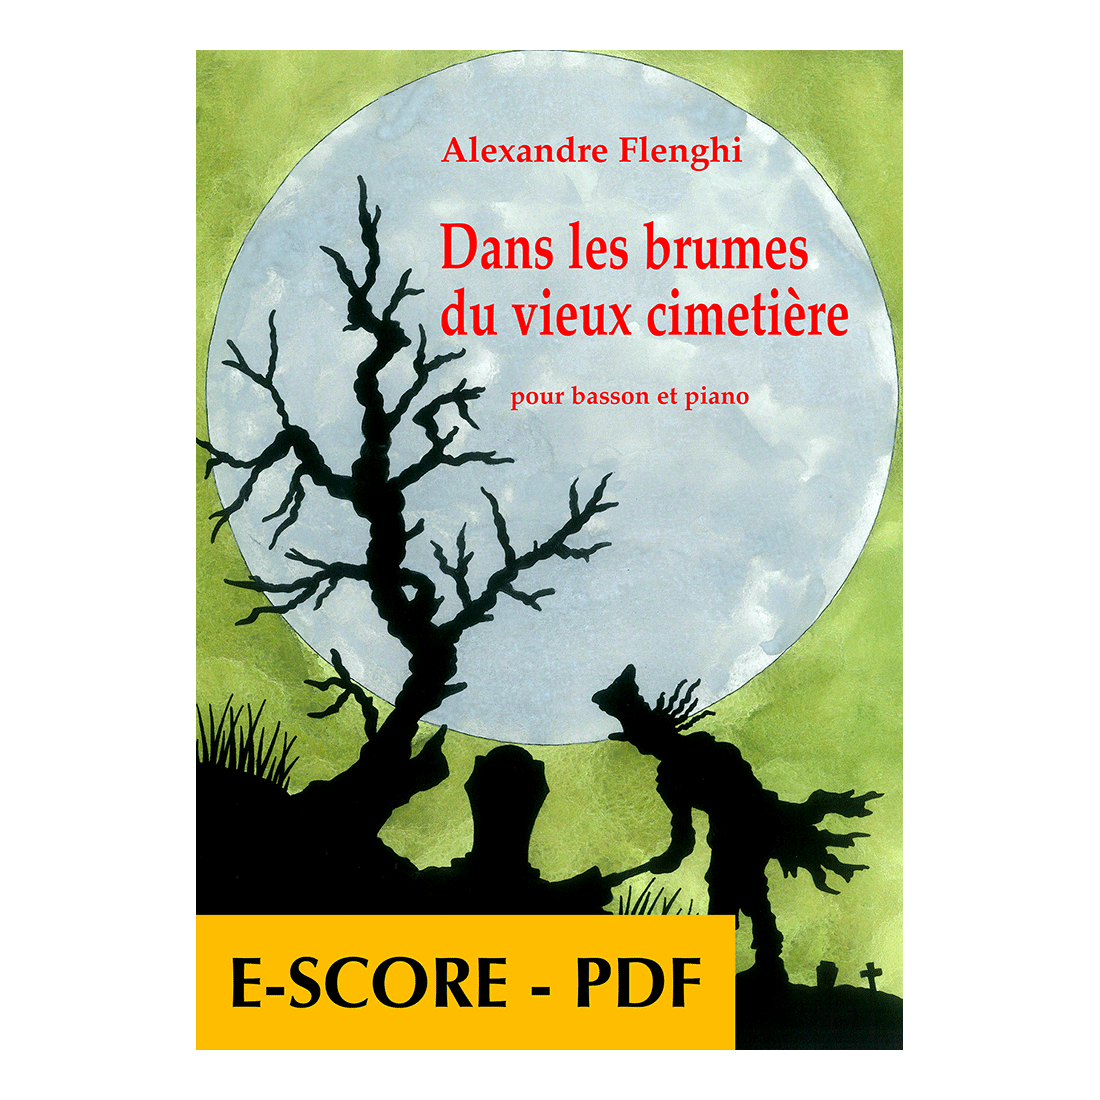 Dans les brumes du vieux cimetière für Fagott und Klavier - E-socre PDF